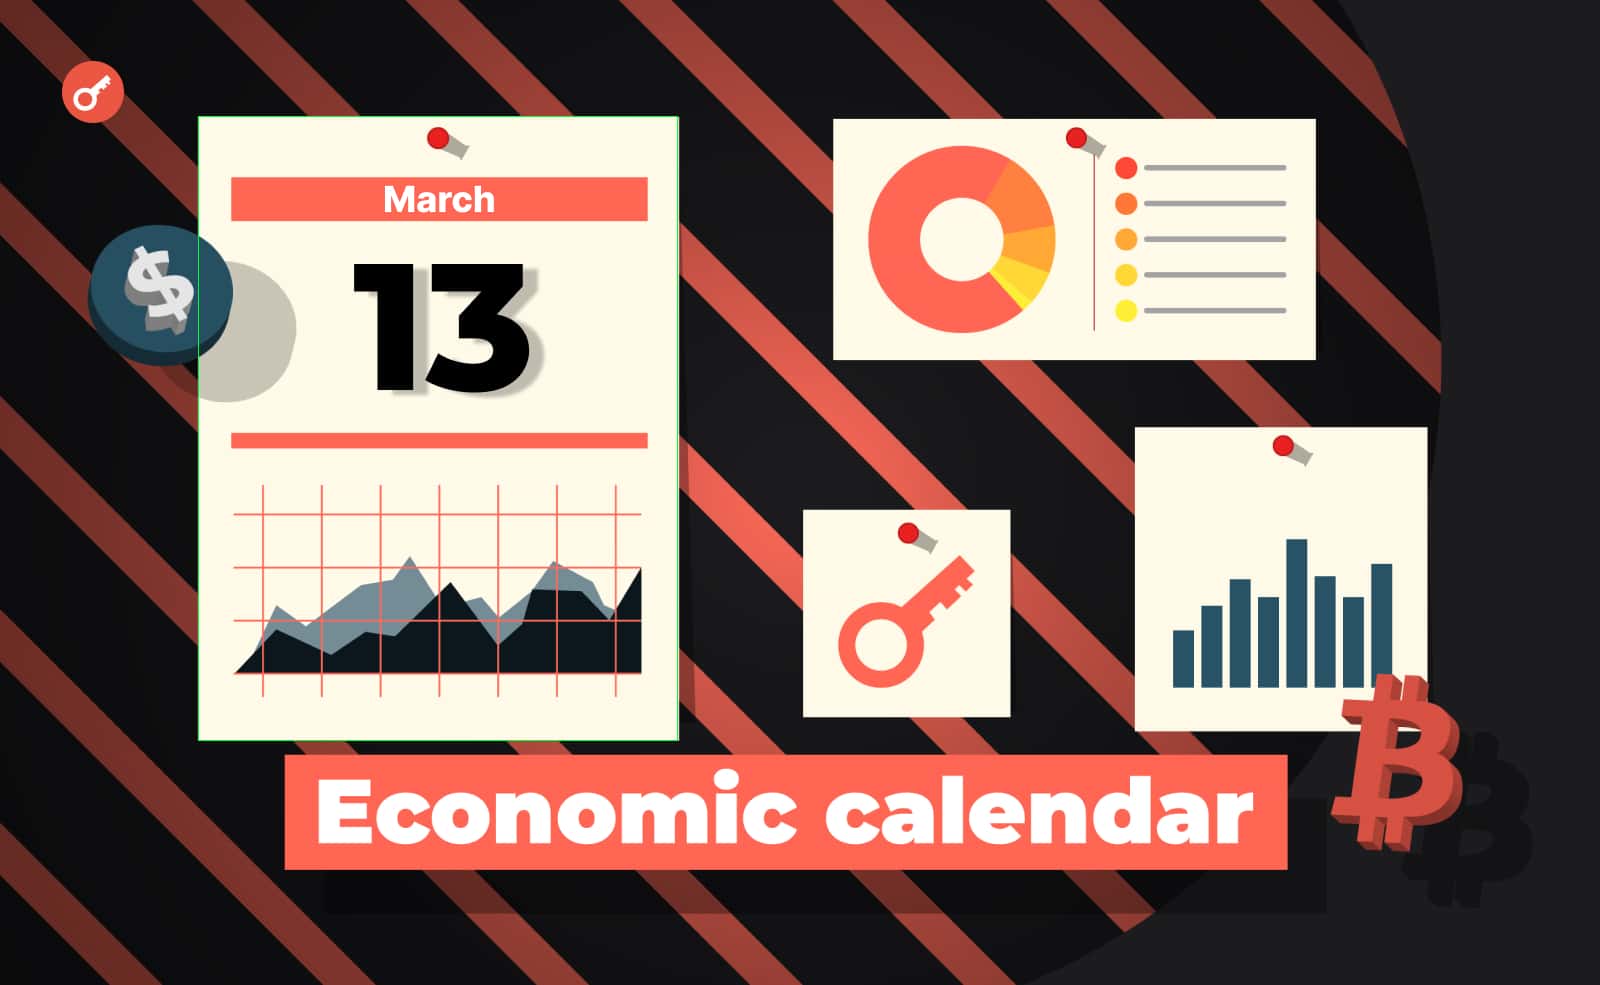 Економічний календар: загроза банківського зараження, виступ Байдена та інфляція у США. Головний колаж новини.